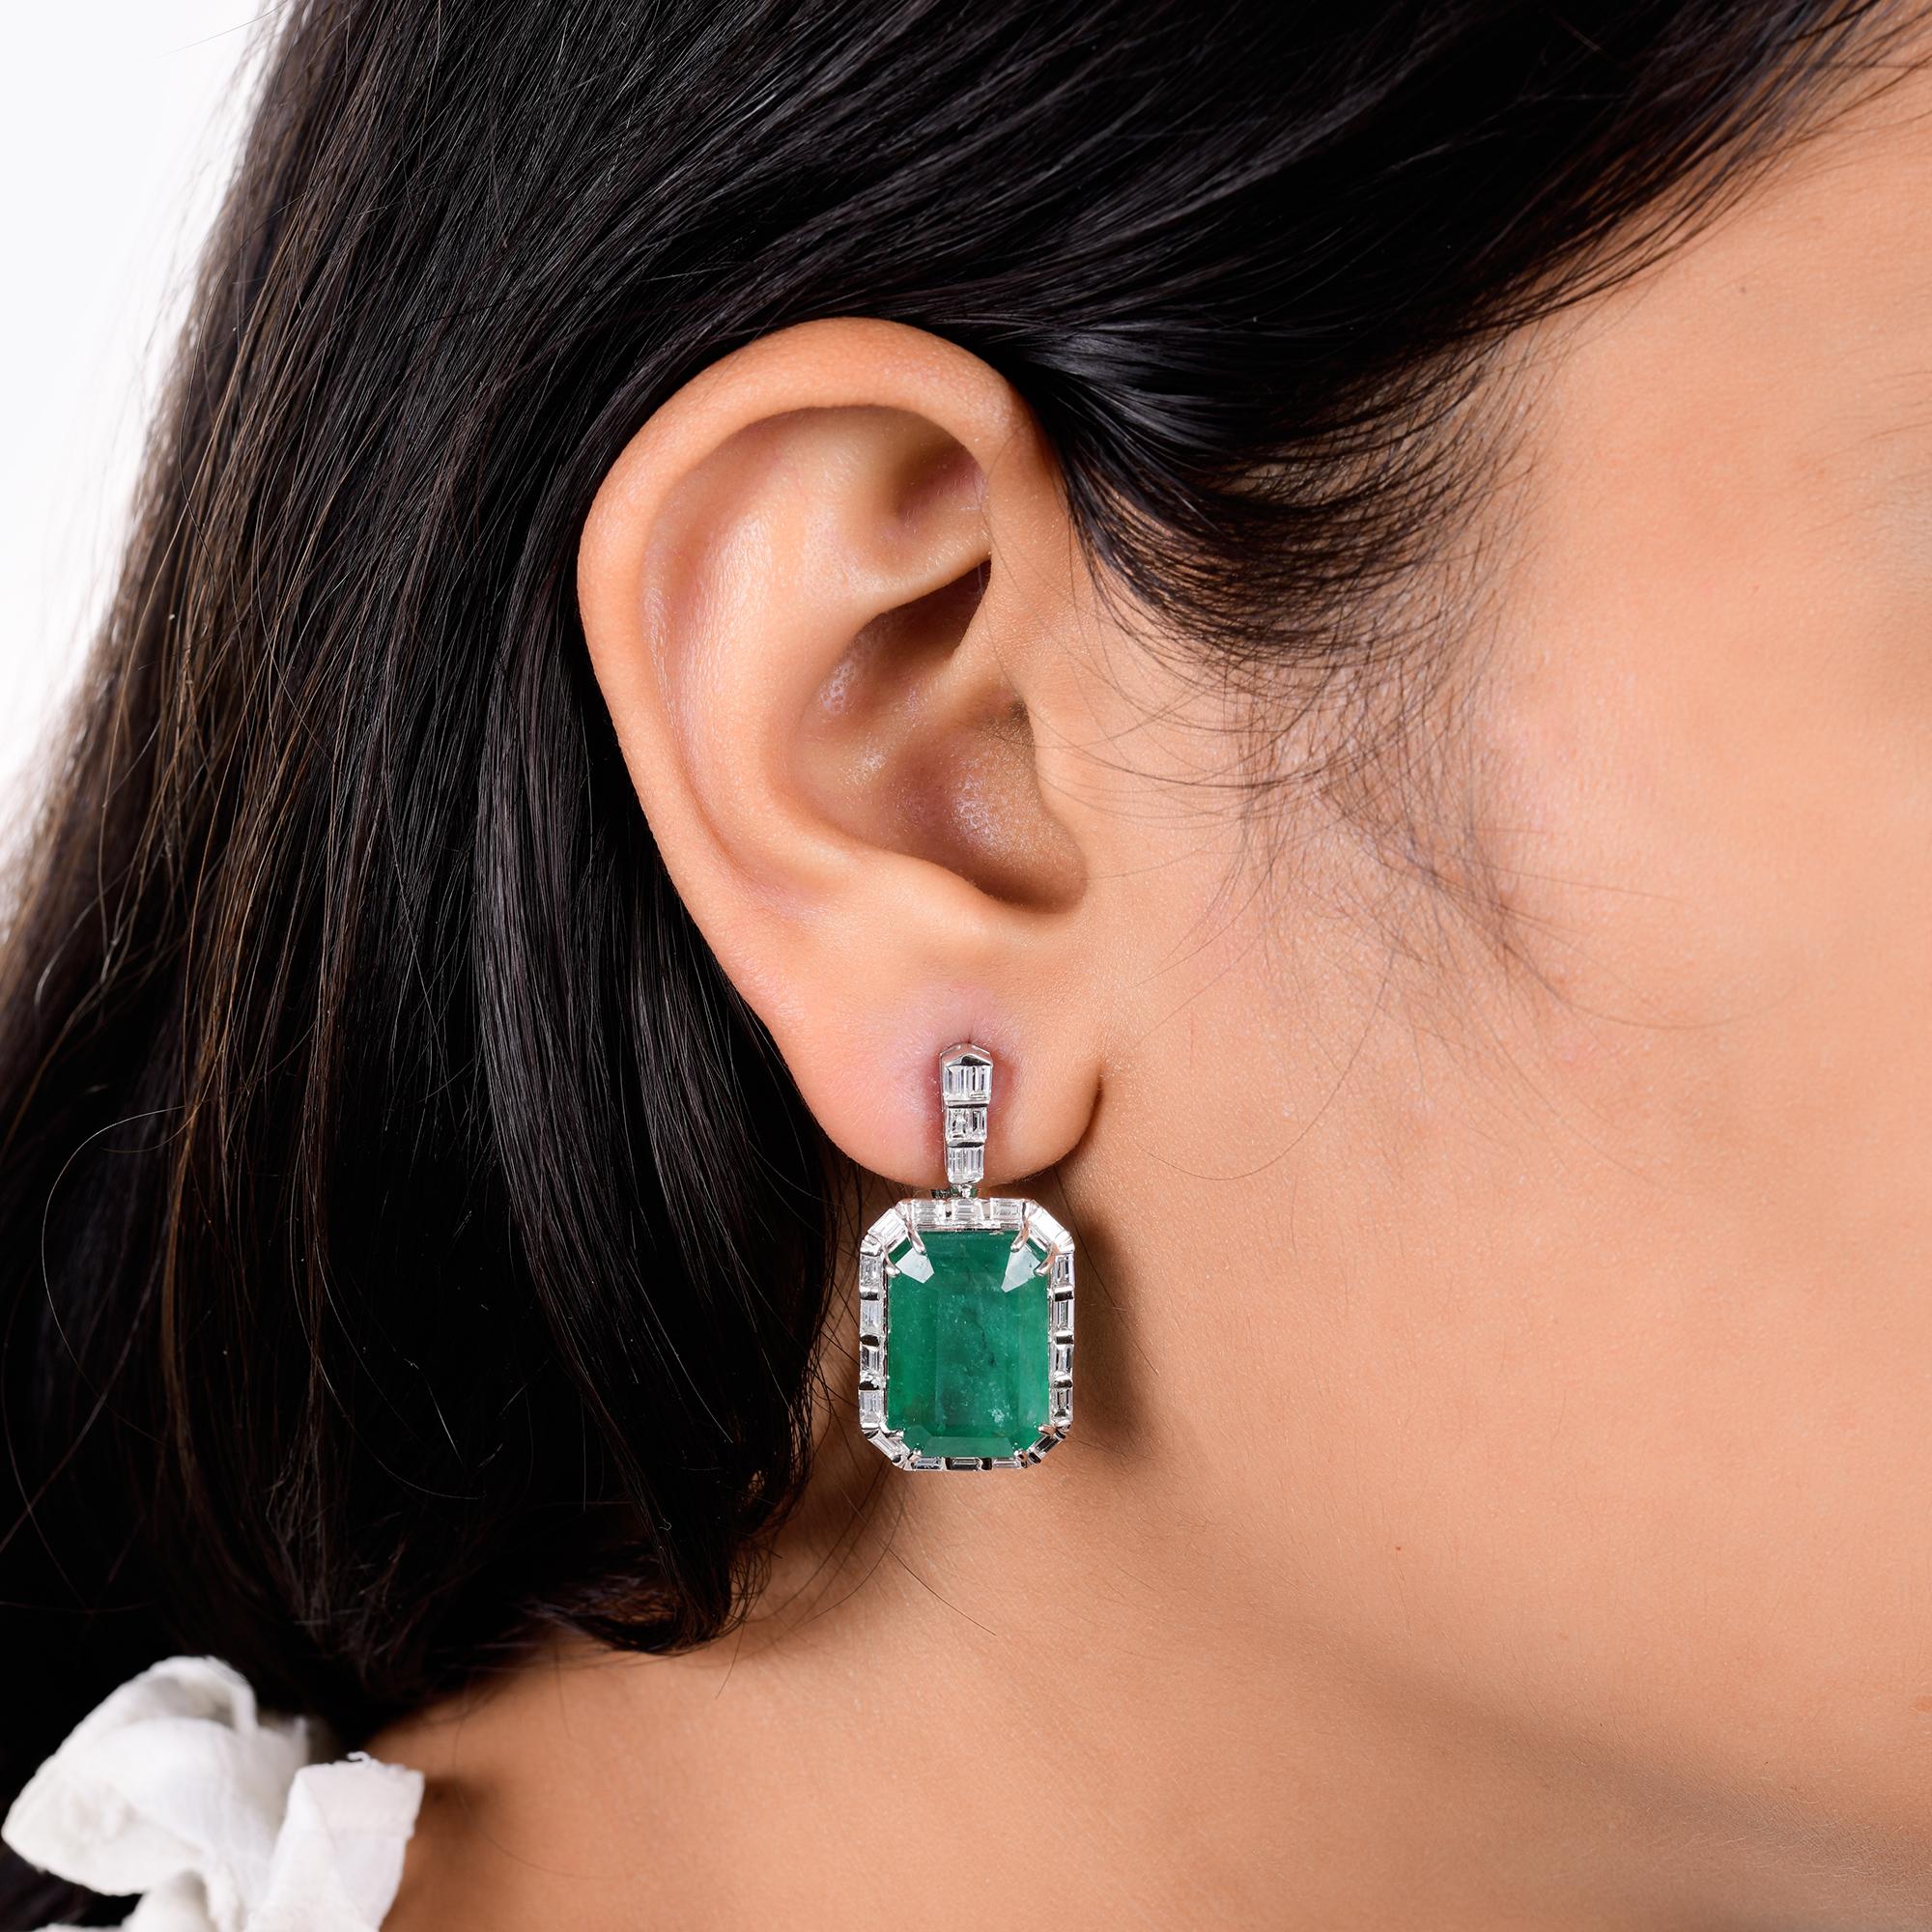 Modern Real Zambian Emerald Gemstone Earrings Diamond 14 Karat White Gold Fine Jewelry For Sale